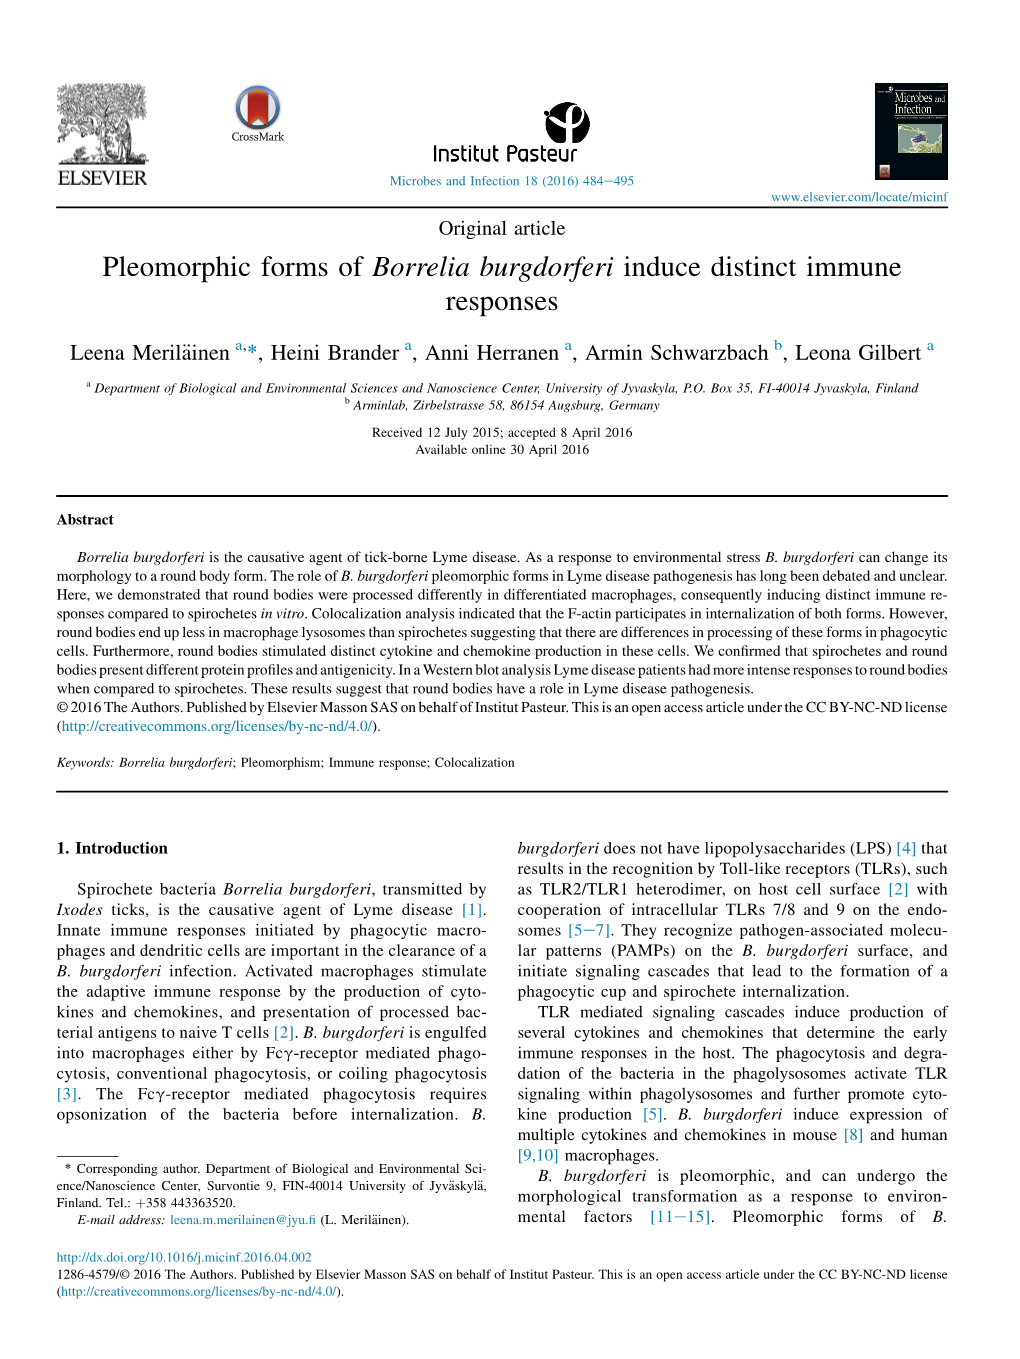 Pleomorphic Forms of Borrelia Burgdorferi Induce Distinct Immune Responses